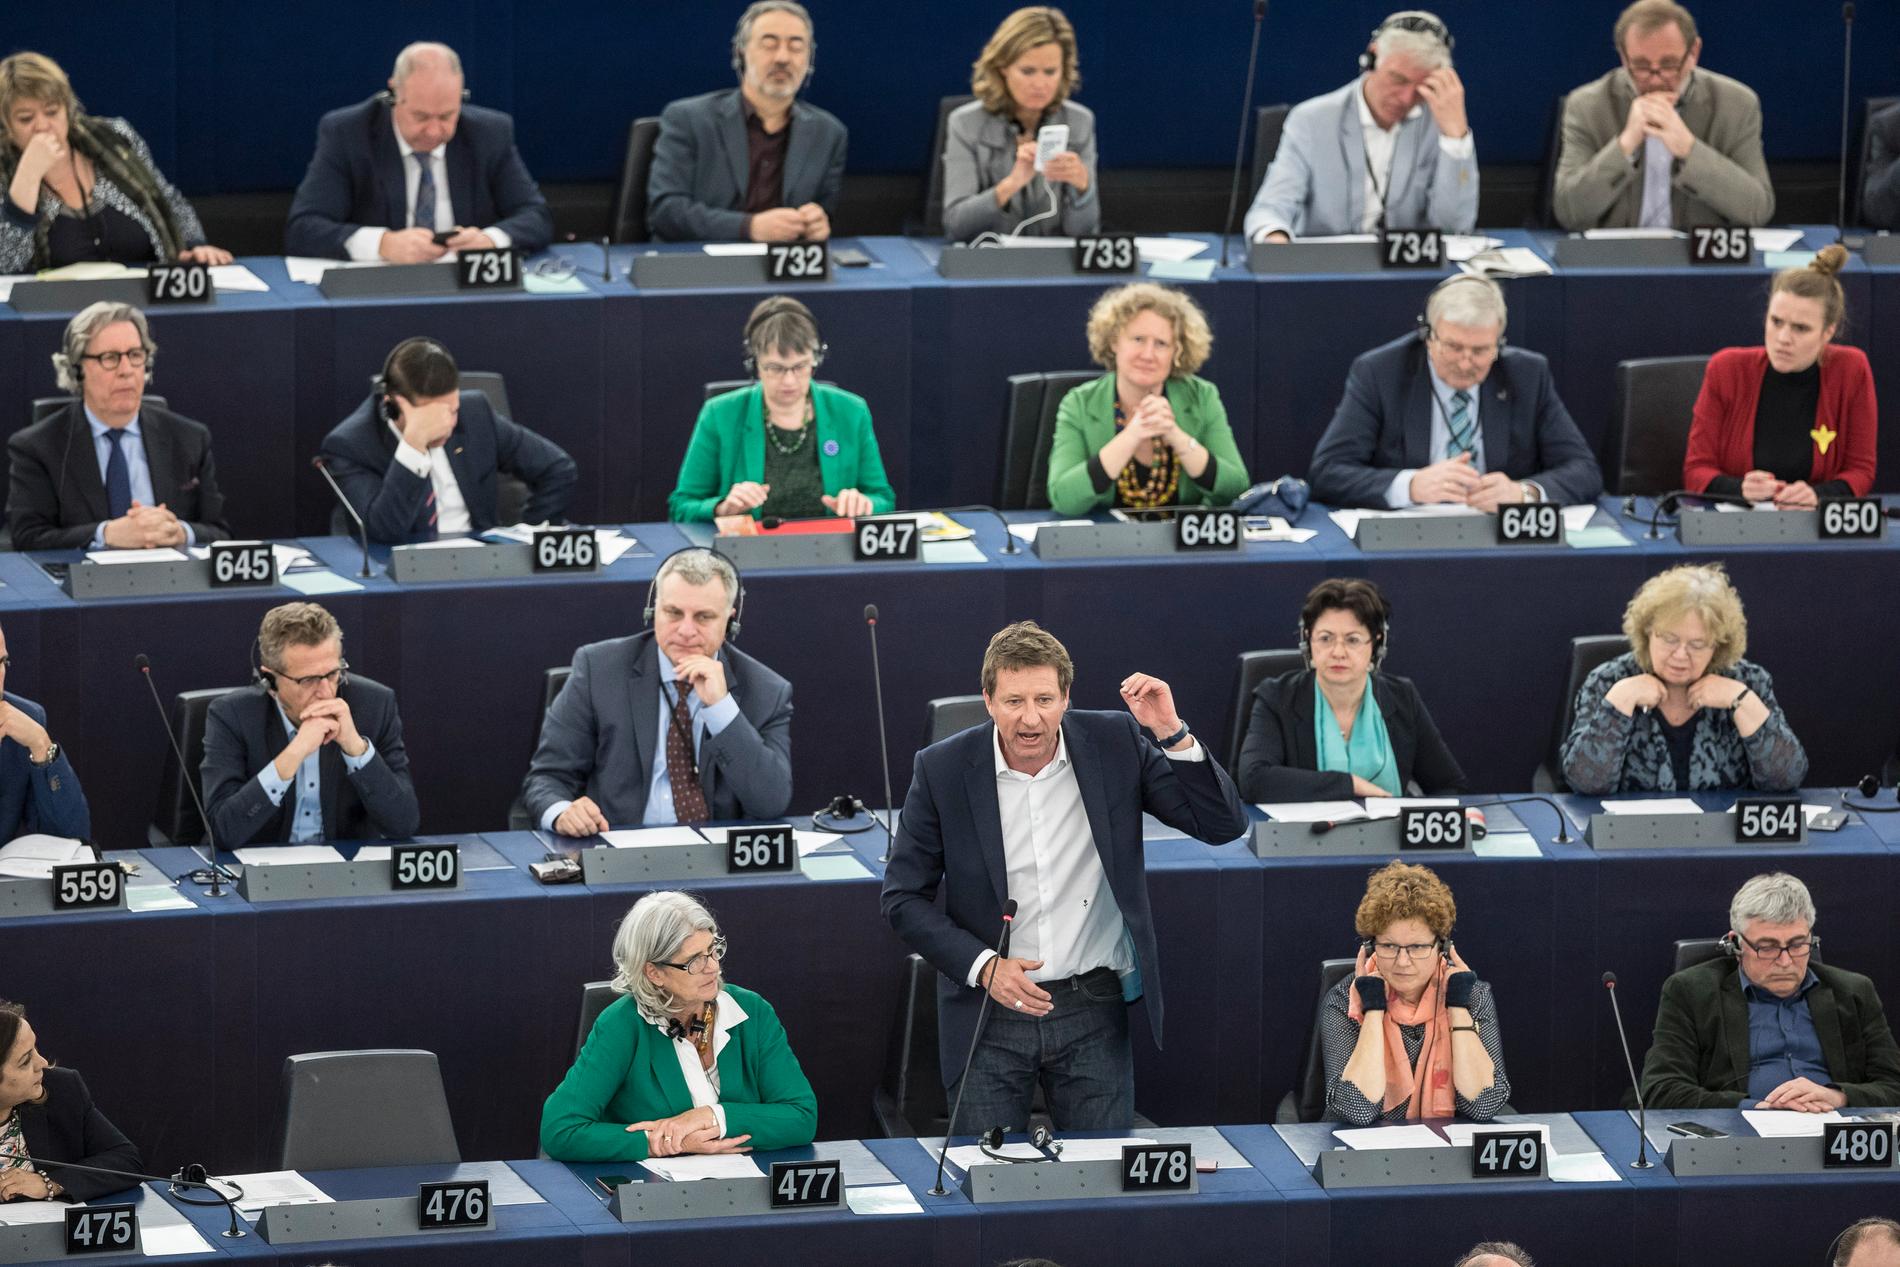 Franske miljöpartisten Yannick Jadot (stående) är en av 41 EU-parlamentsledamöter som utsetts av sina partigrupper för att förhandla om framtida politik. Ingen svensk finns dock med. Arkivfoto.